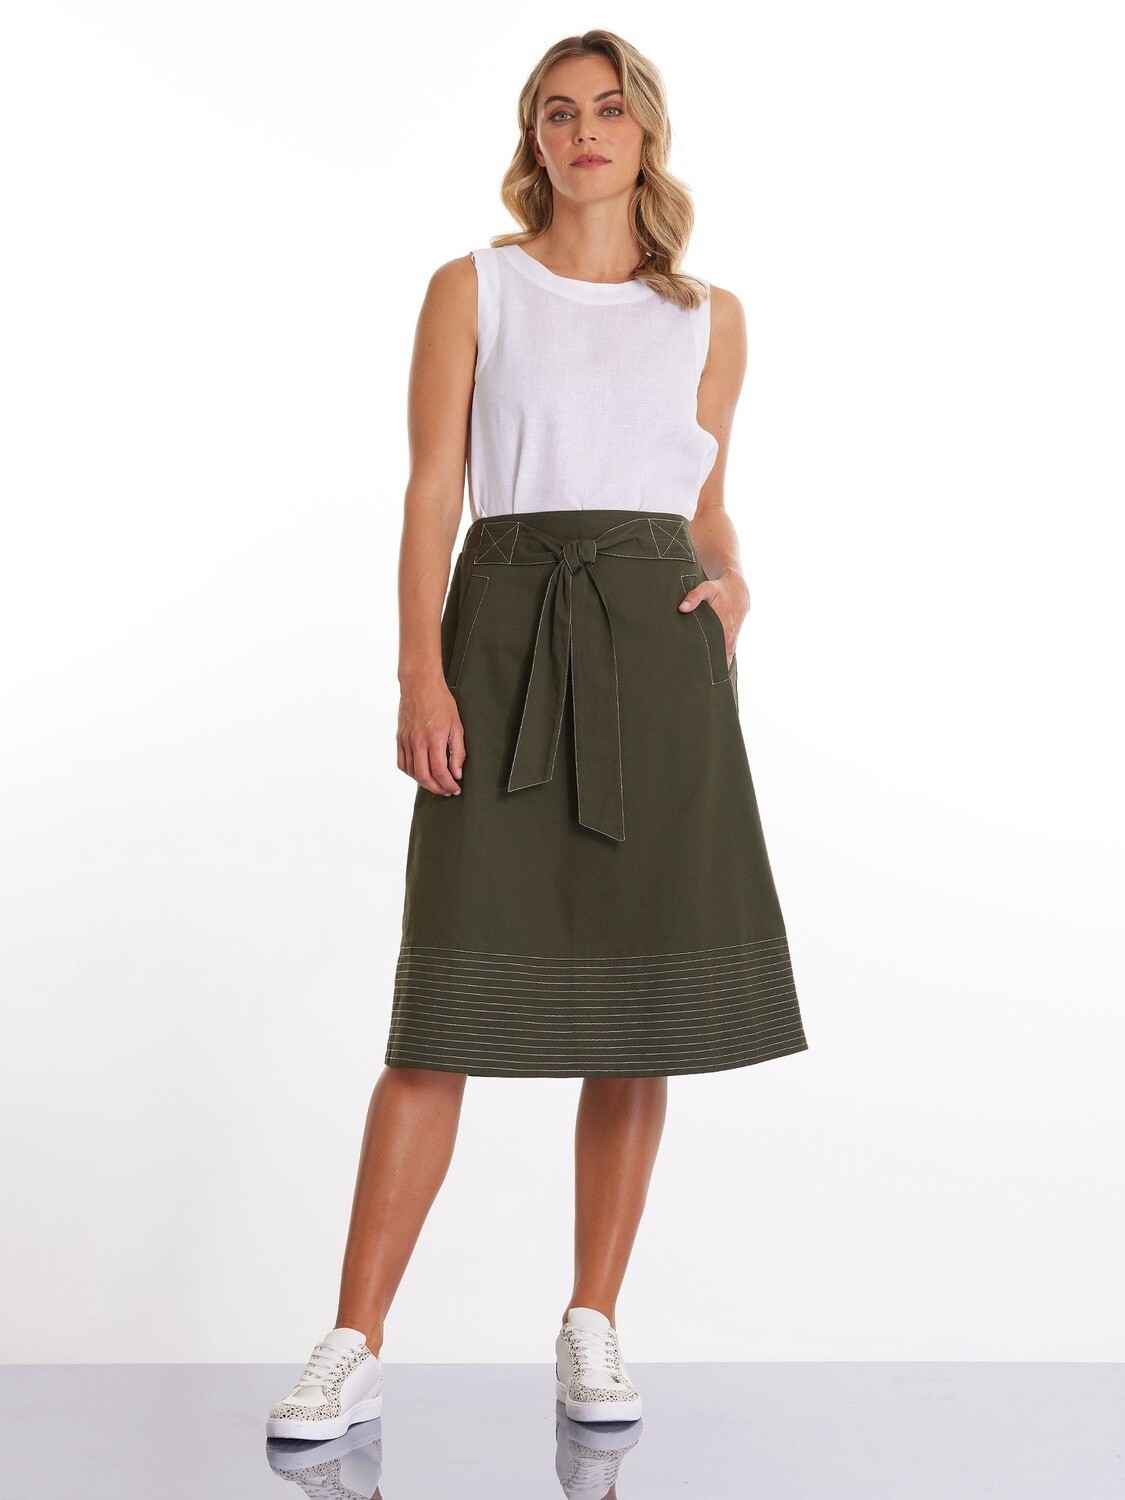 Marco Polo Topstitch Cotton Skirt Dark Khaki, Size: 10